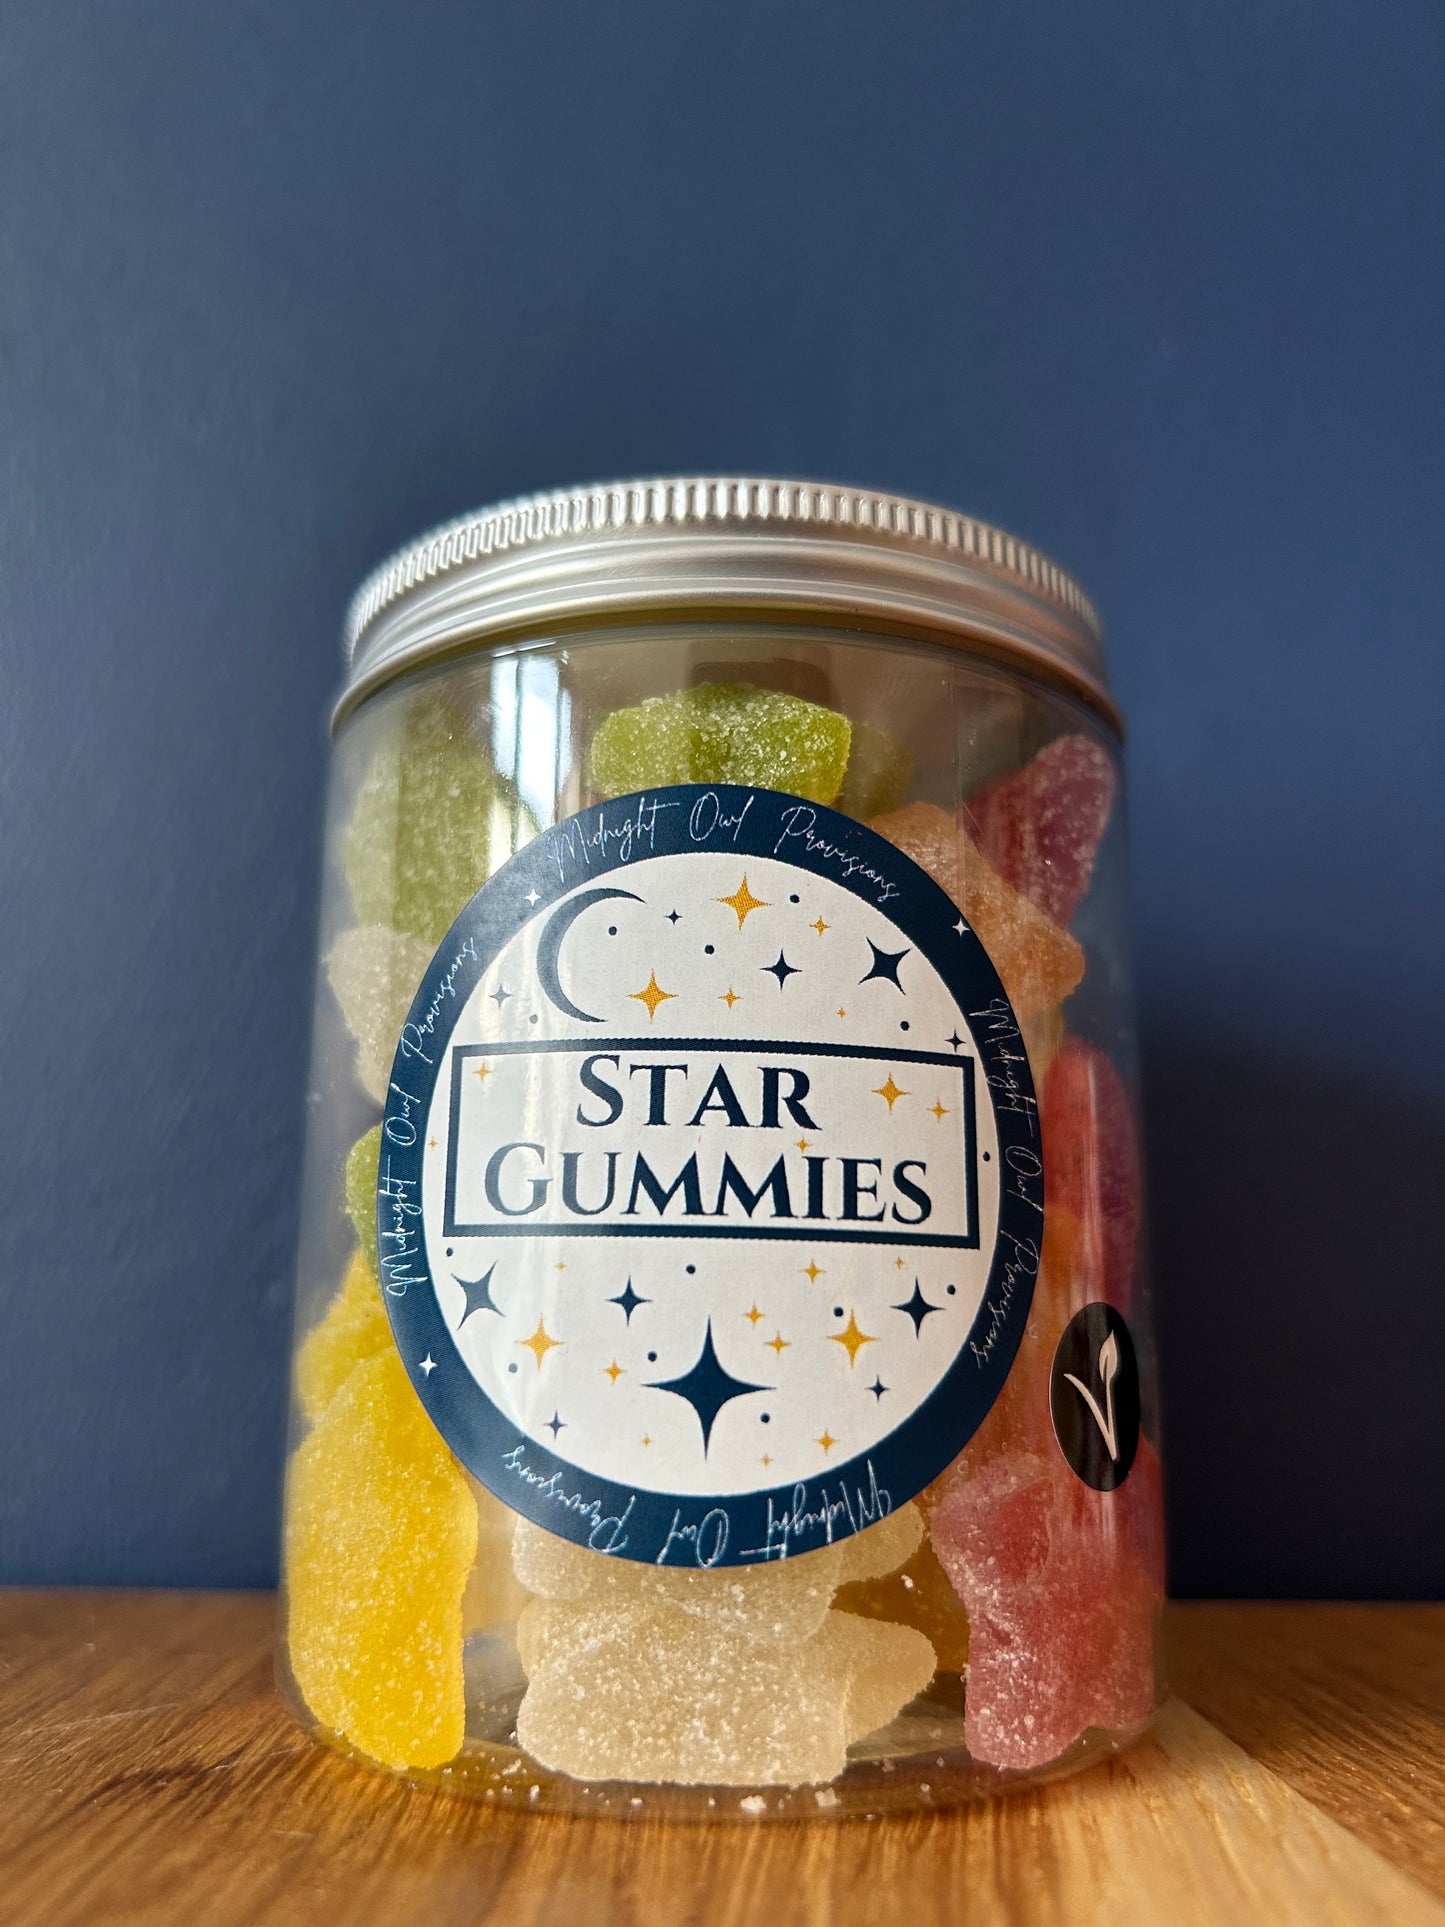 Star Gummies - Jar